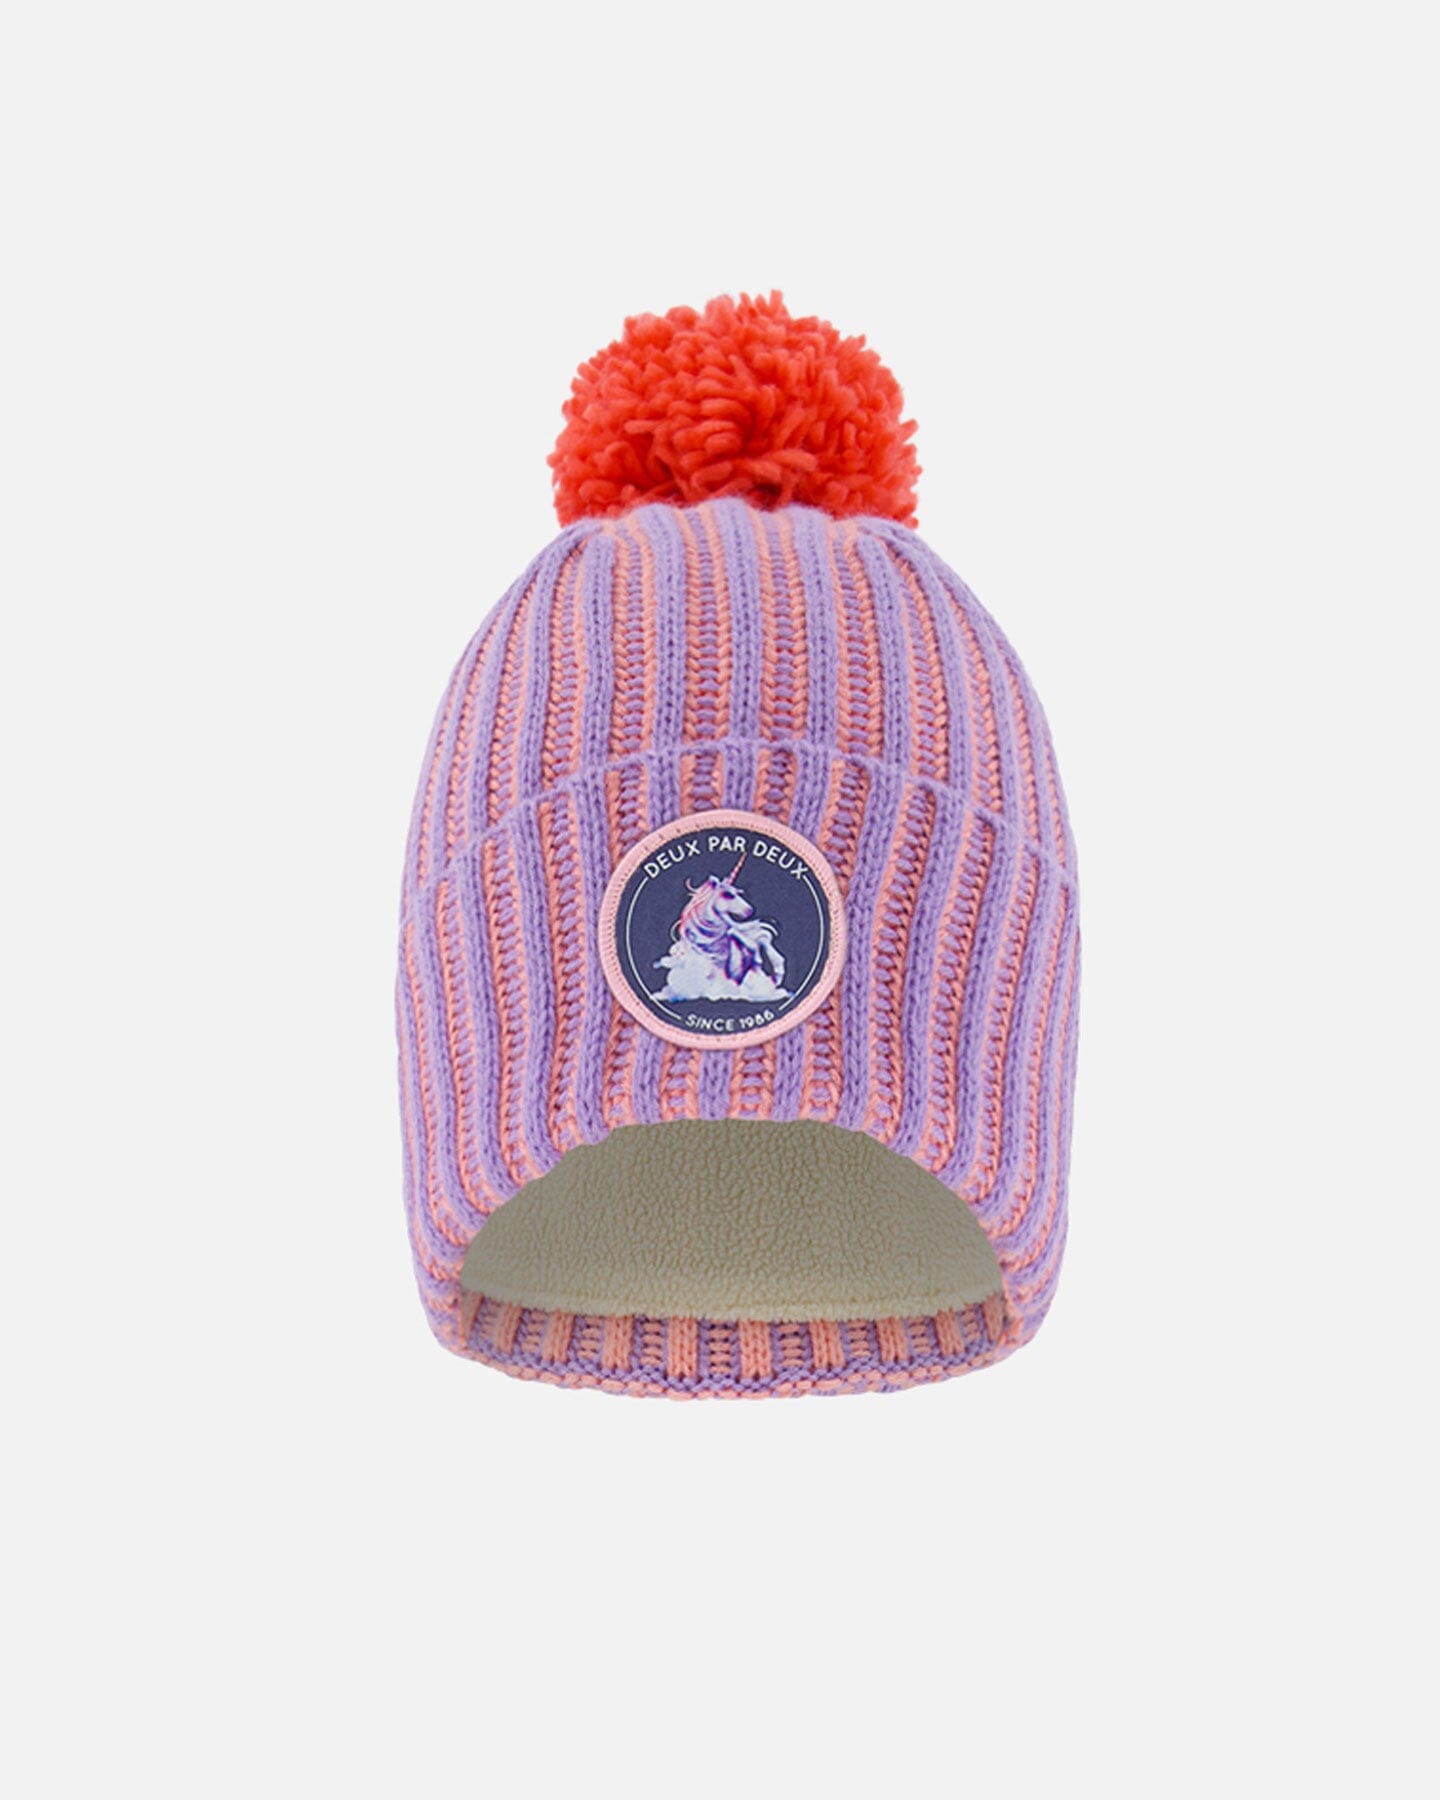 Knit Hat Lavender And Coral Winter Accessories Deux par Deux 